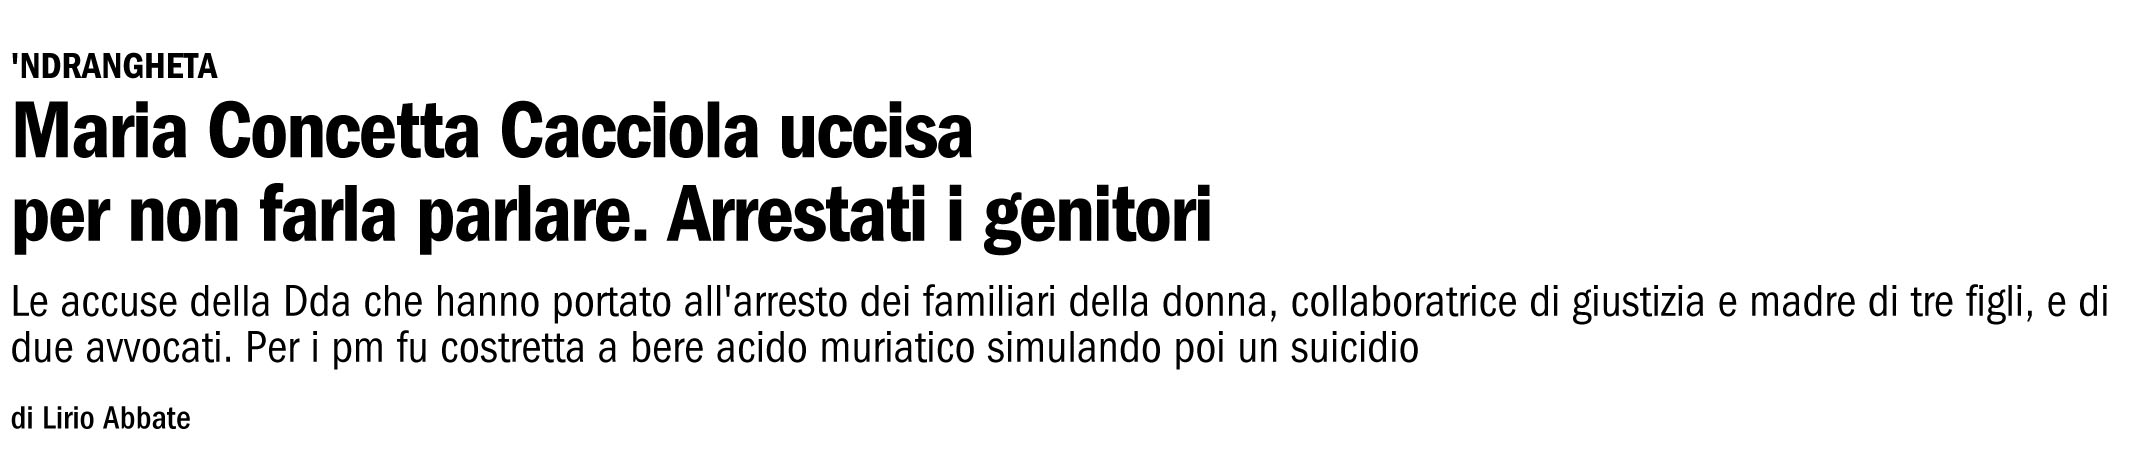 Maria Concetta Cacciola, arrestati i familiari/file1